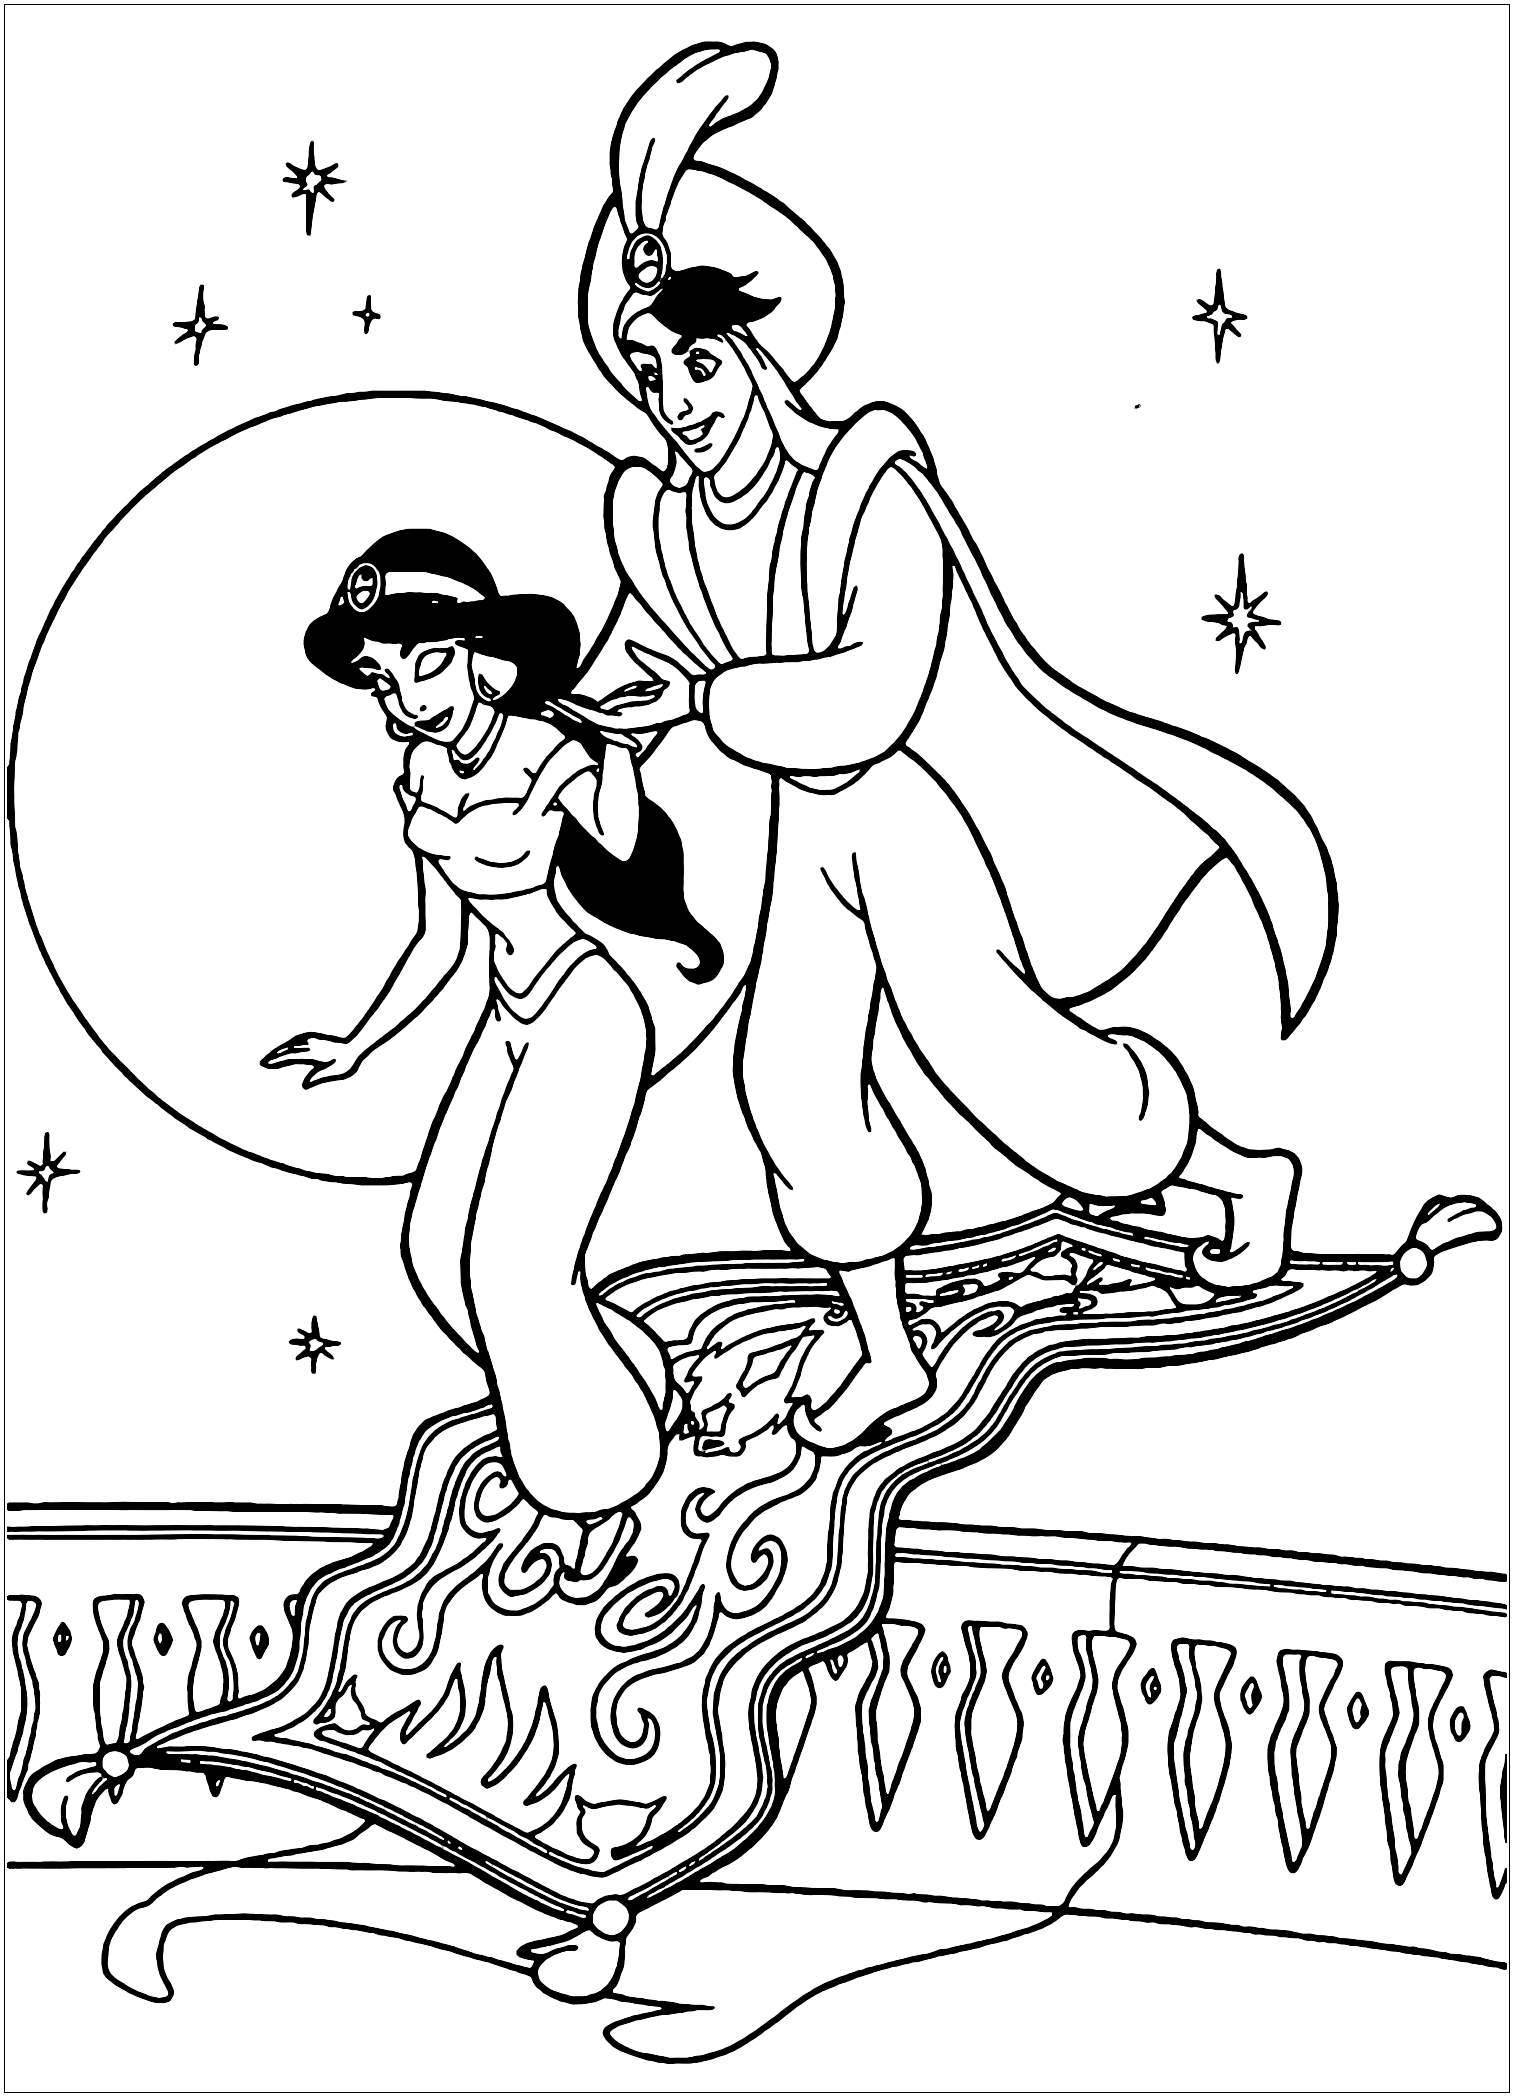 Aladdin et Jasmine revenant de leur voyage sur un tapis volant